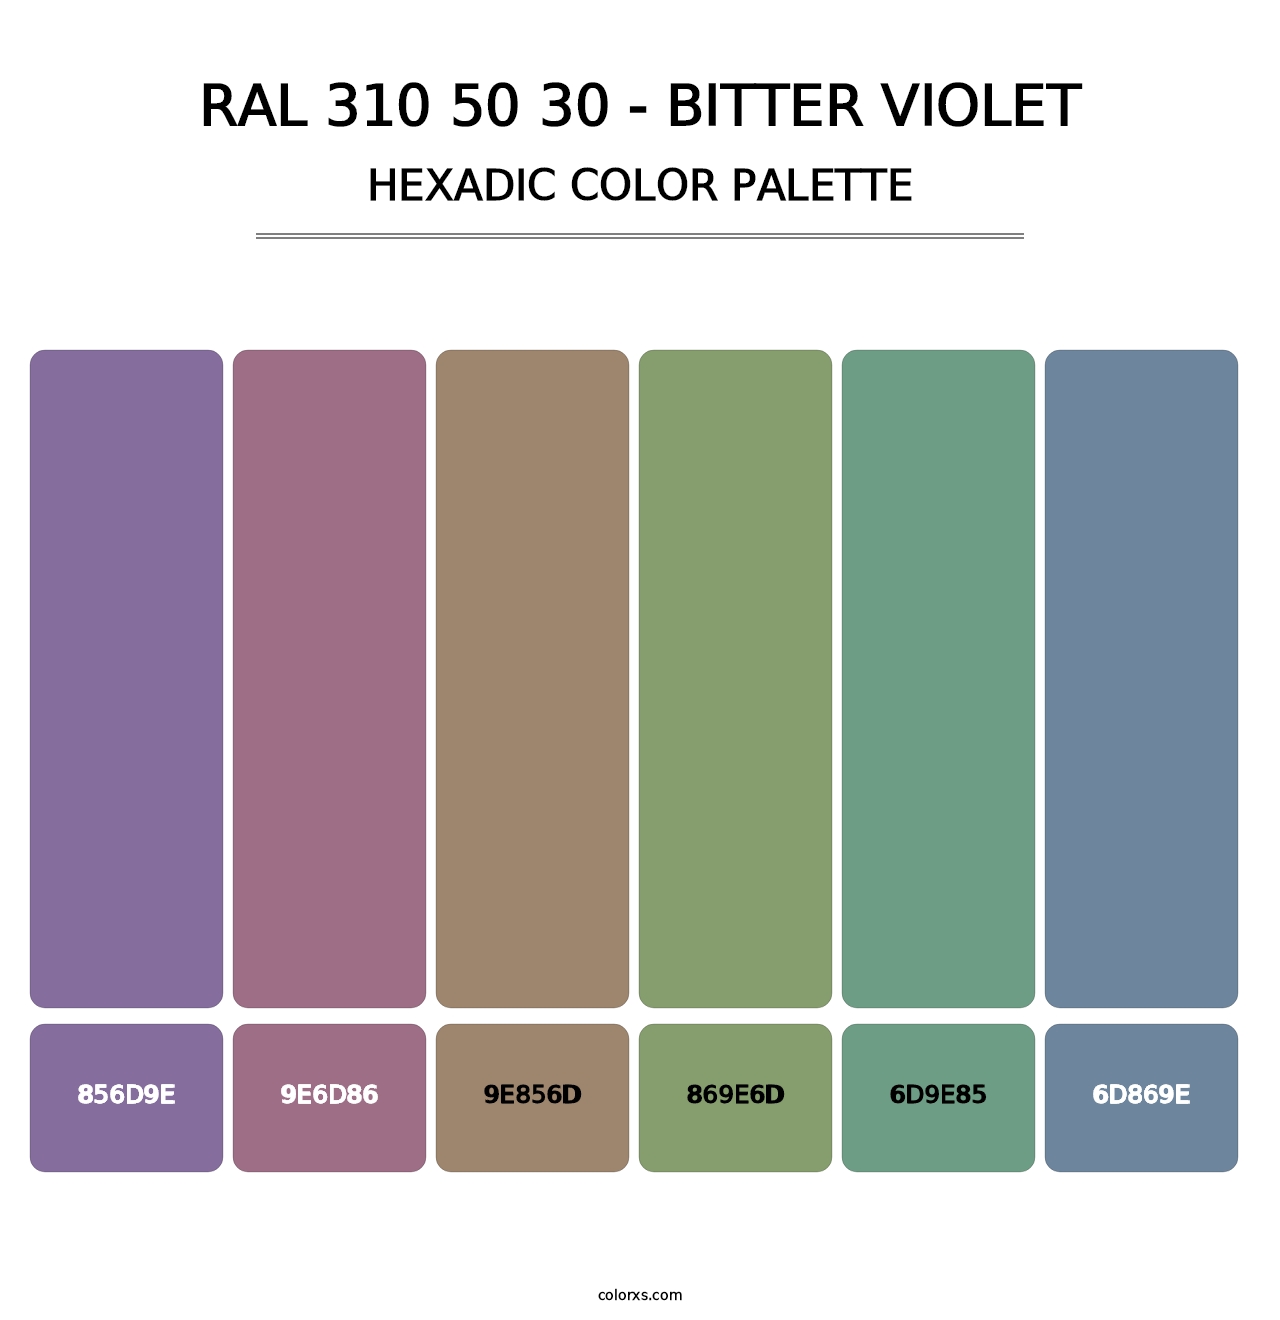 RAL 310 50 30 - Bitter Violet - Hexadic Color Palette